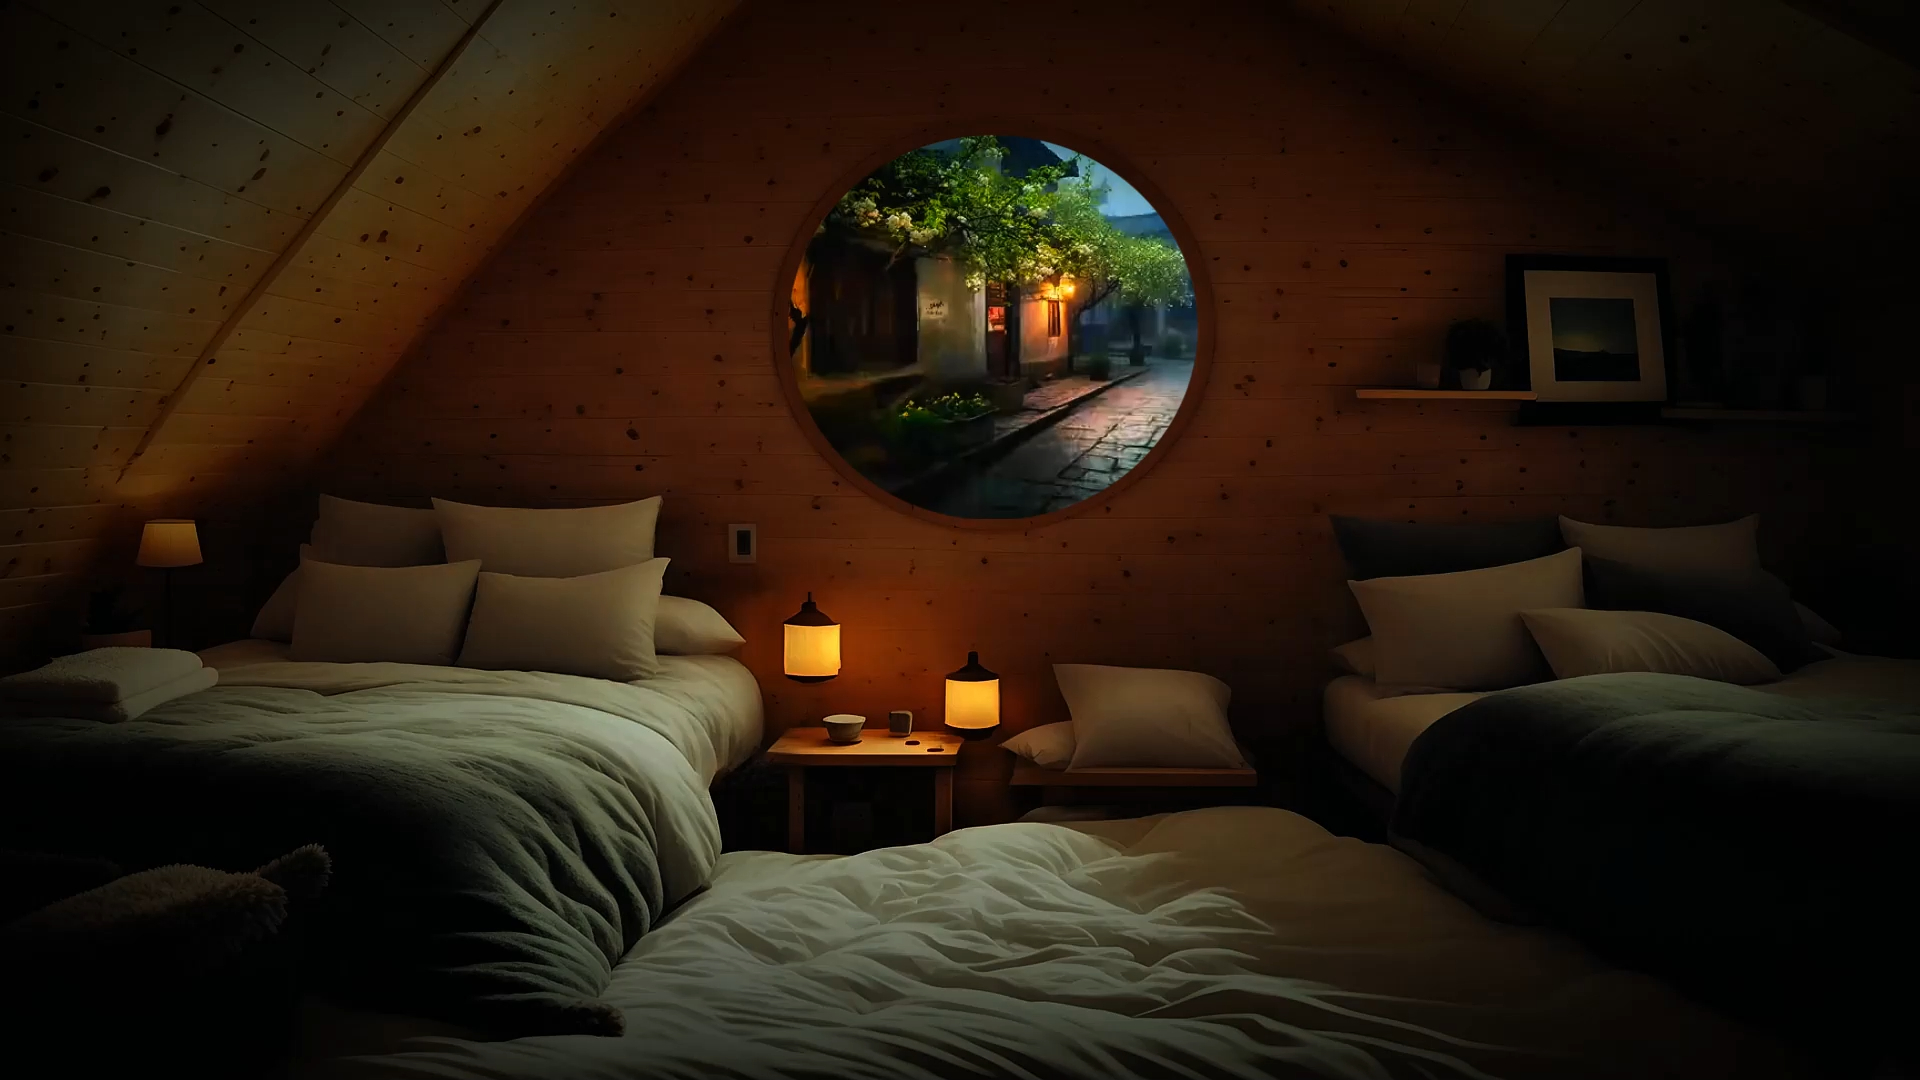 雨天舒服的小木屋放松入睡丨狂风暴雨助眠夜丨雨声白噪音